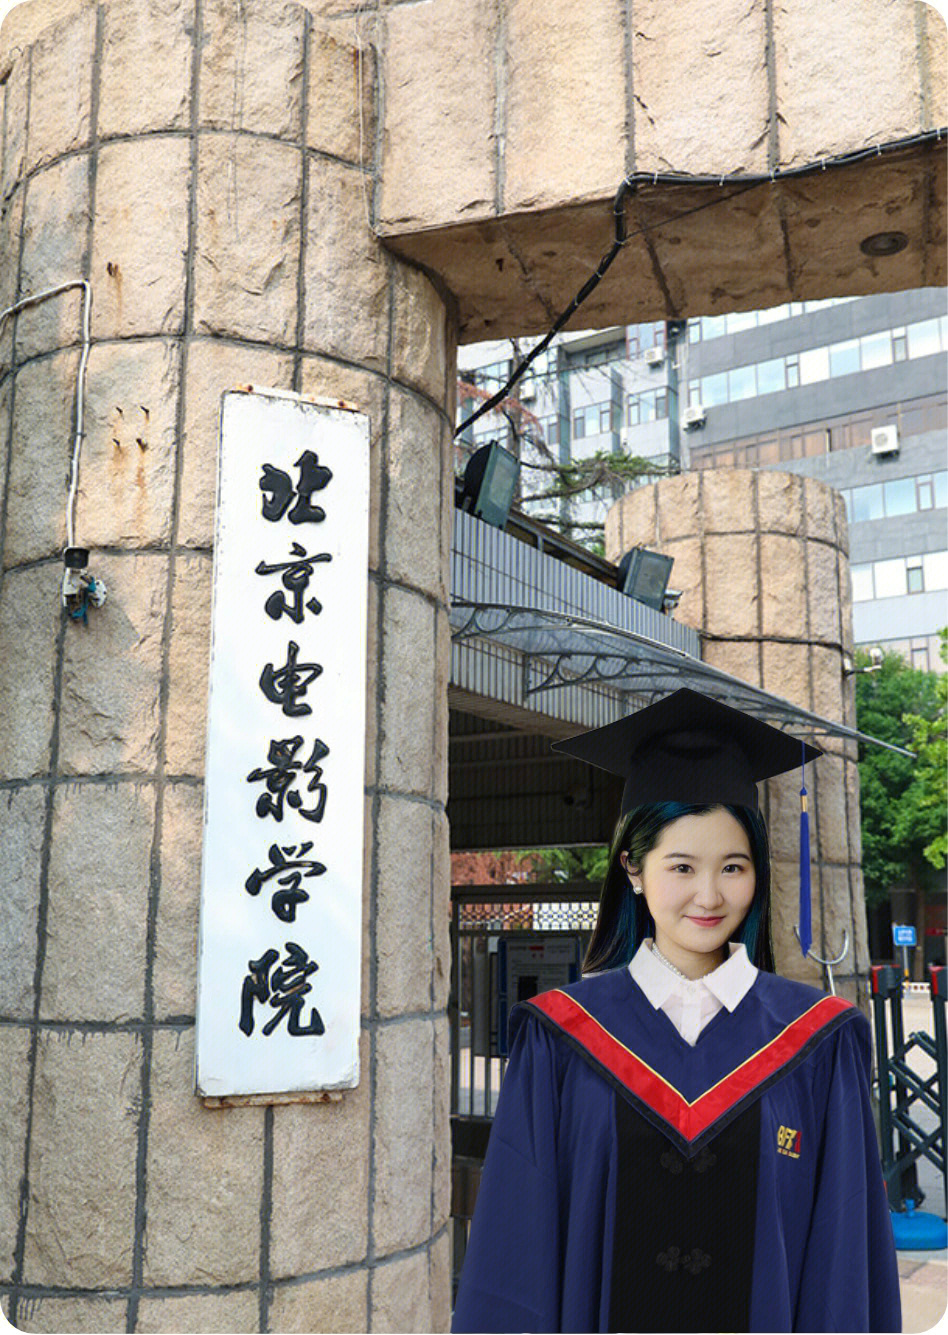 朱永博毕业了图片